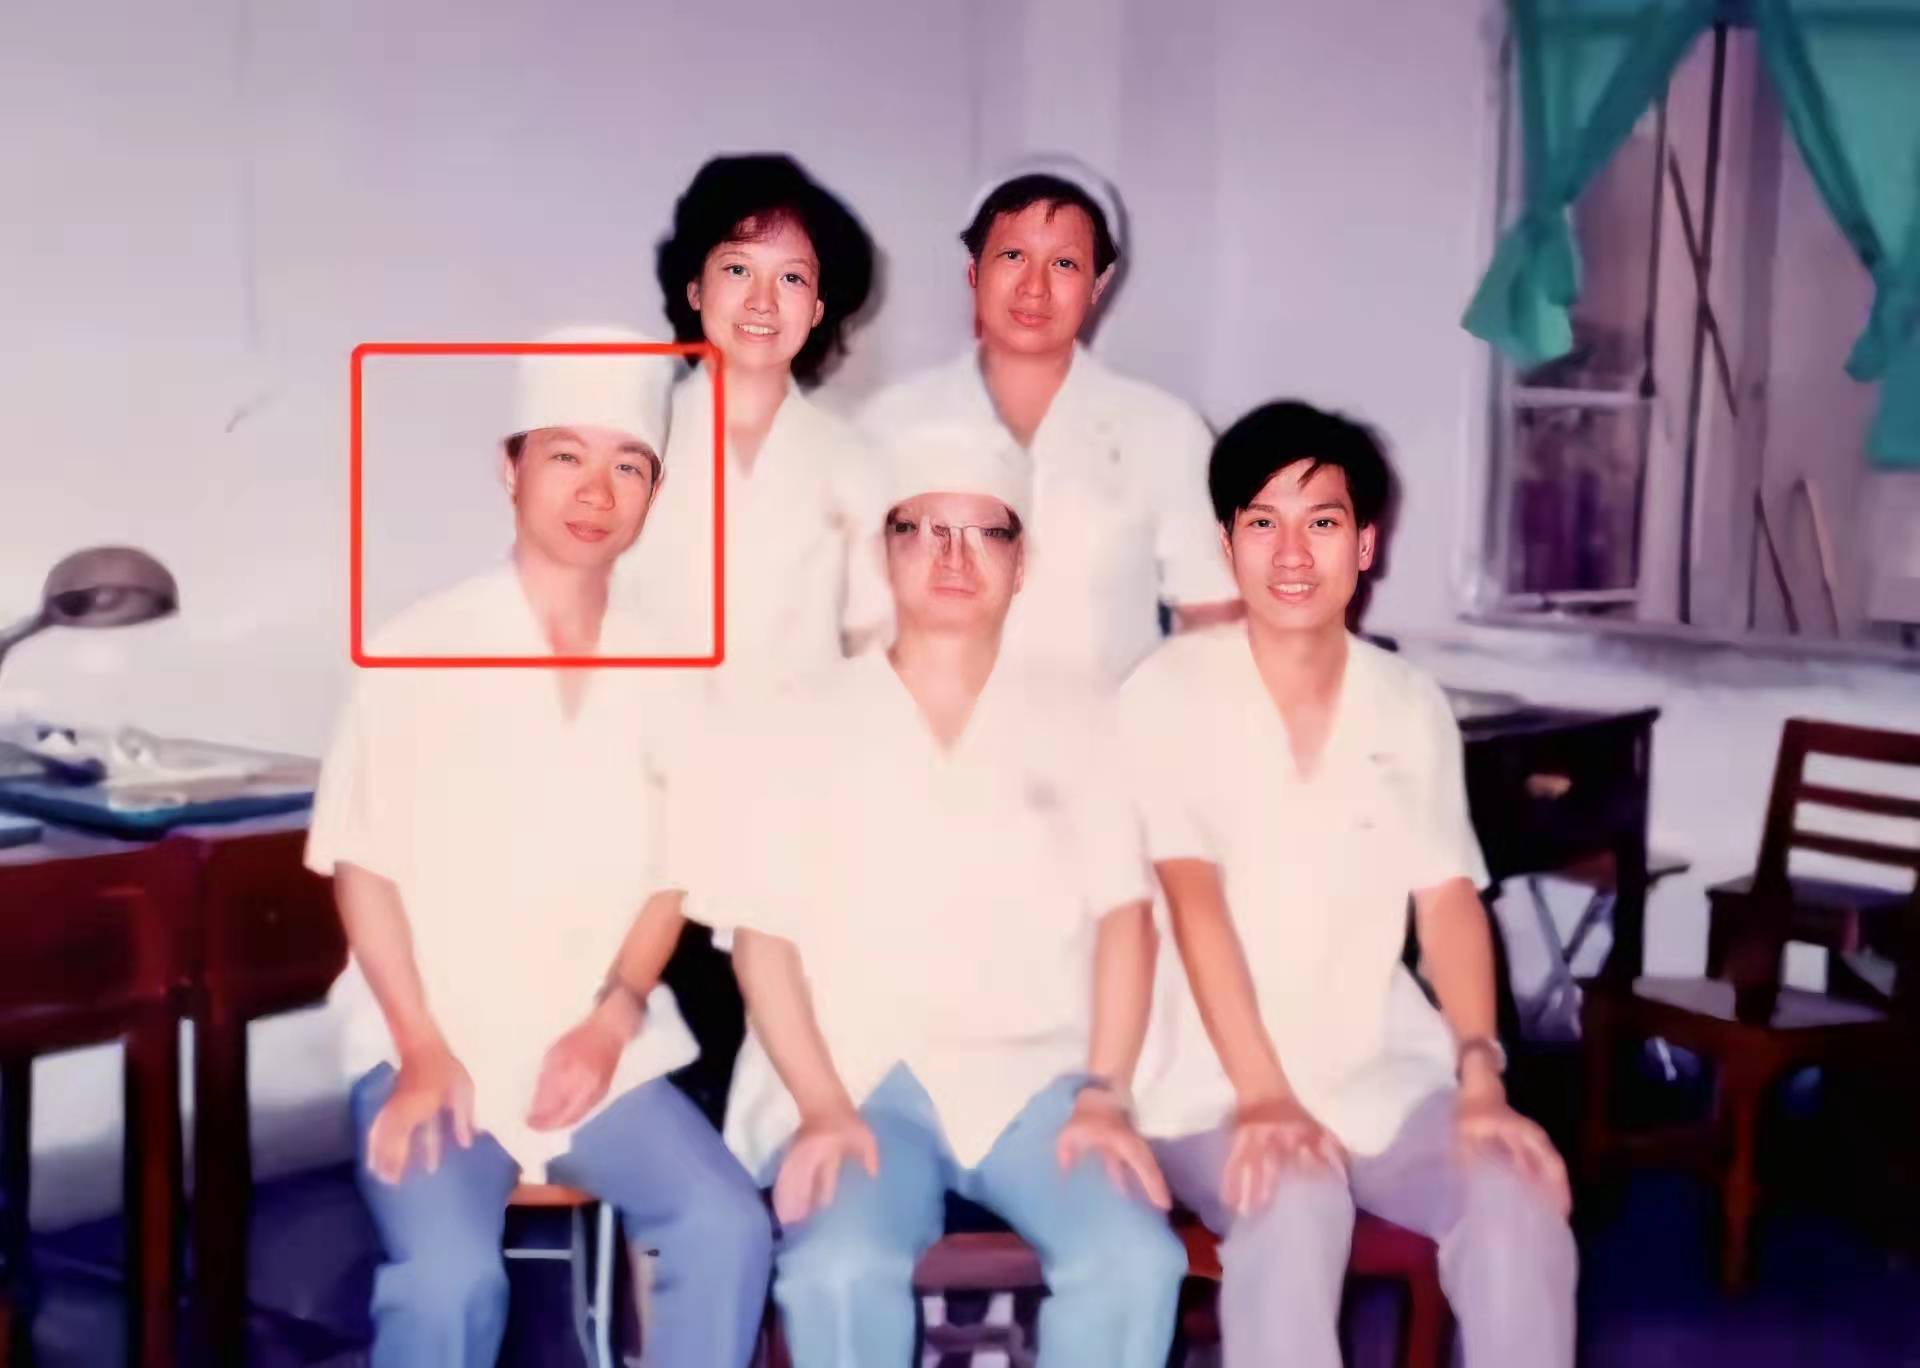 Tiến sĩ Đại học Bắc Kinh ra đời thất nghiệp phải về quê sống nhờ trợ cấp, gia đình giải thích lý do đáng suy ngẫm - Ảnh 2.